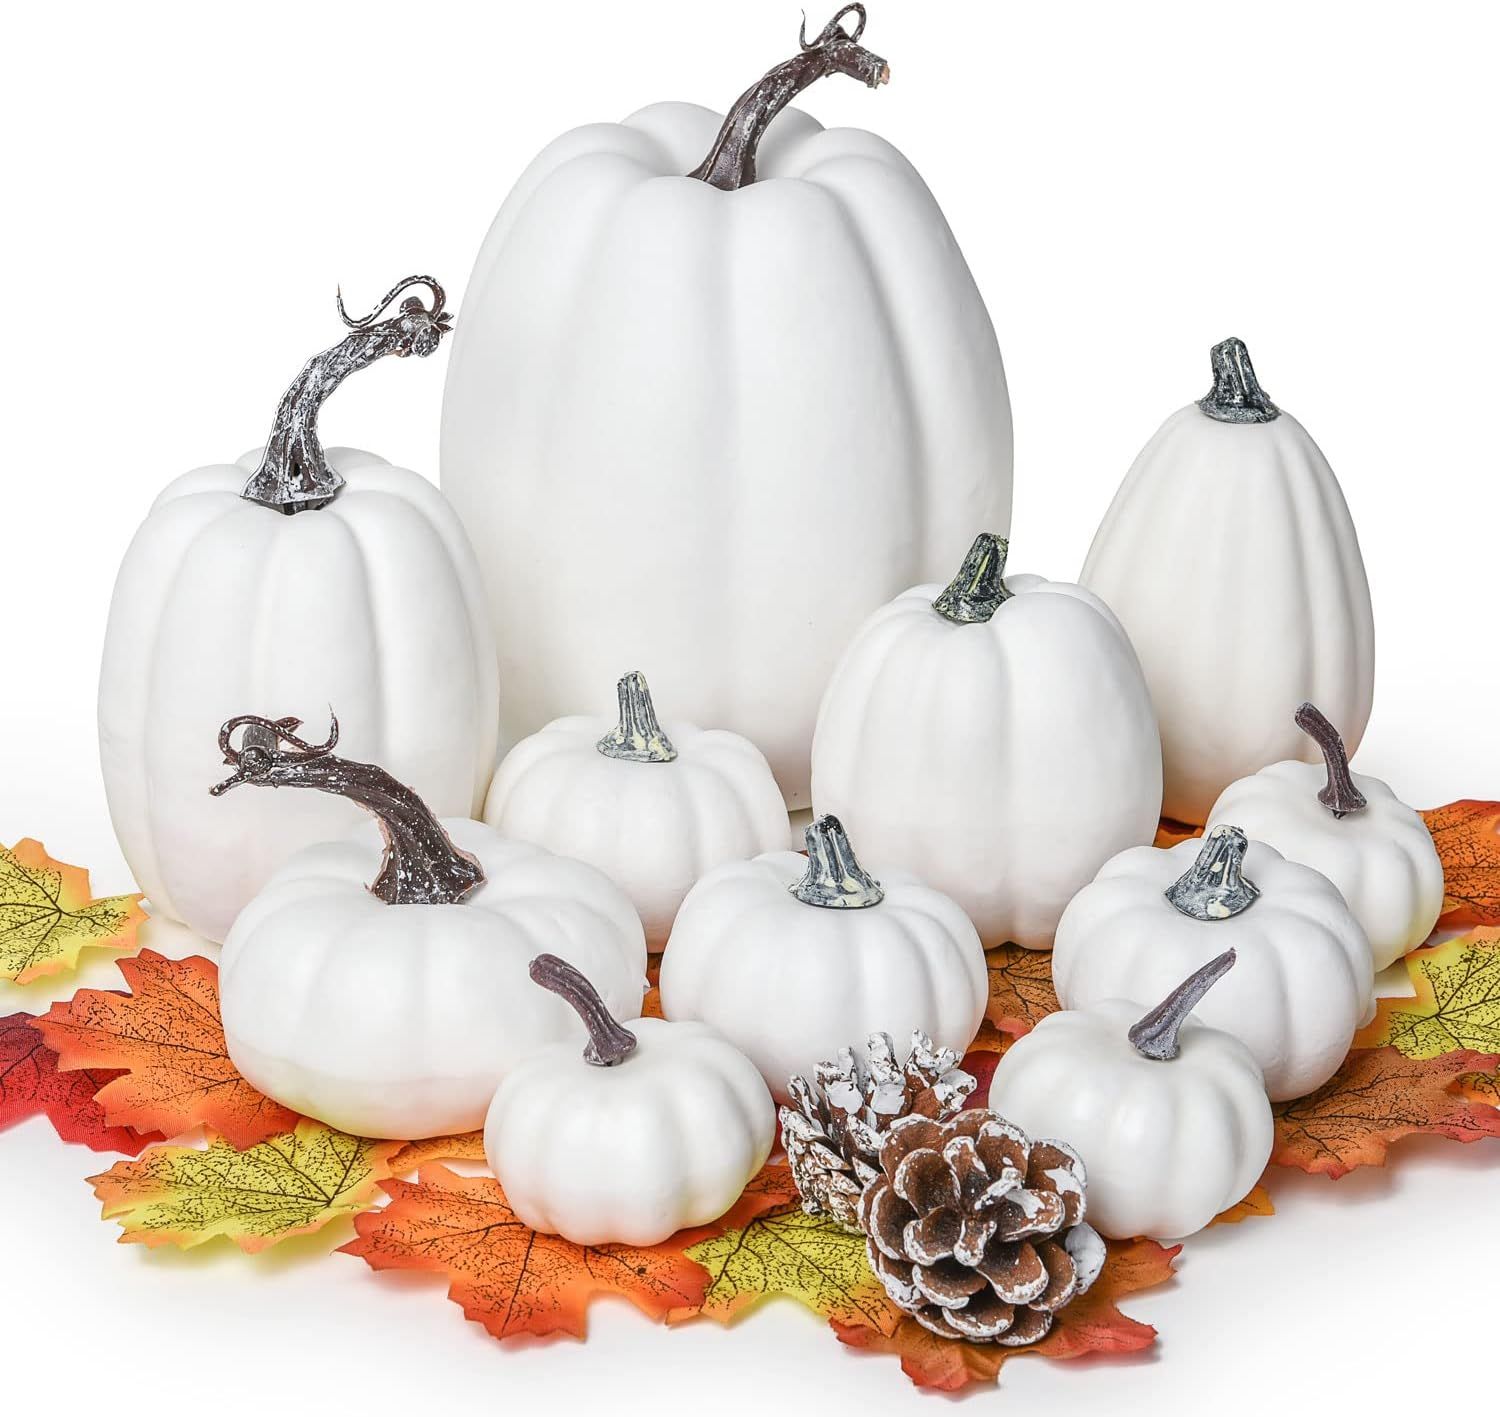 Lvydec Artificial Pumpkins Set Harvest Decoration, 11pcs Assorted Size White Pumpkins with 50pcs ... | Amazon (US)